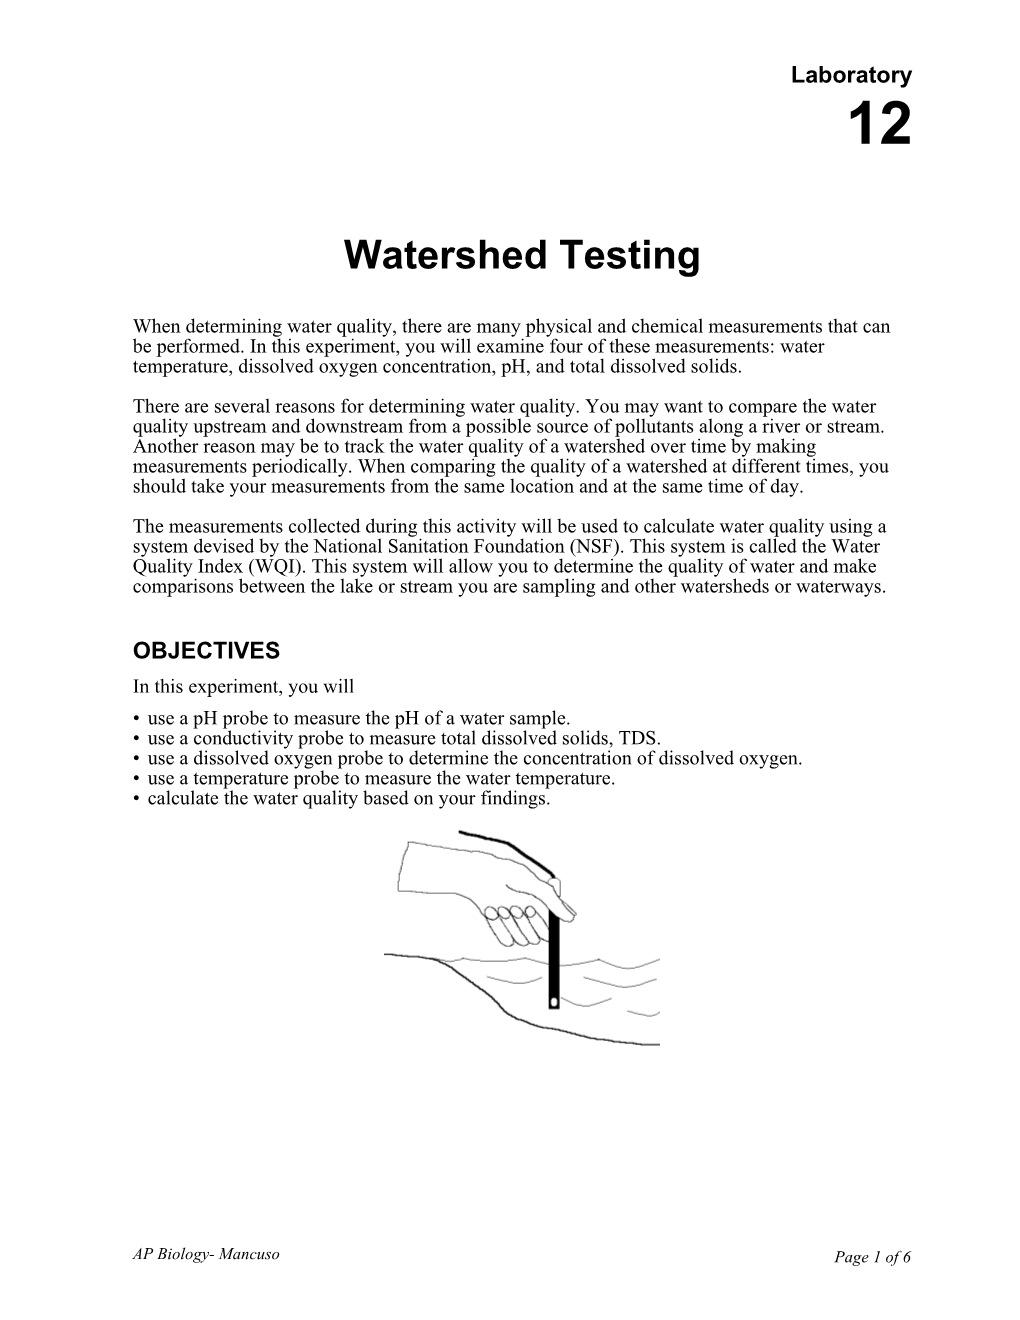 Lab 12: Watershed Testing